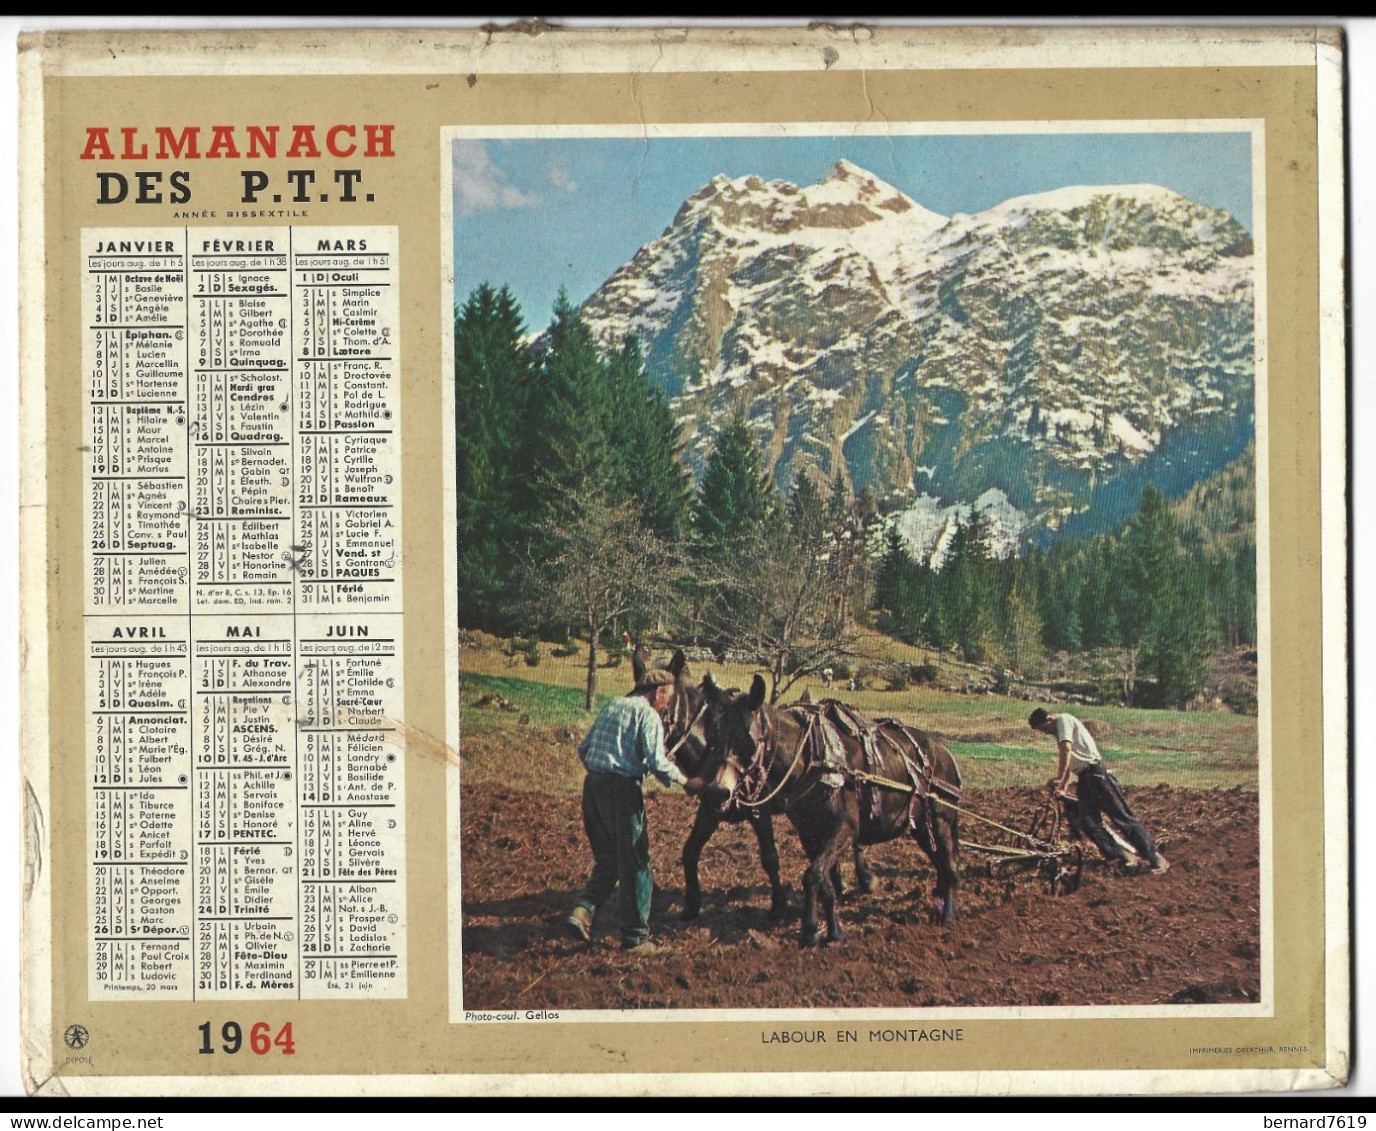 Almanach  Calendrier  P.T.T  -  La Poste -  1964 -  Labour En Montagne -printemps En Savoie - Grossformat : 1961-70